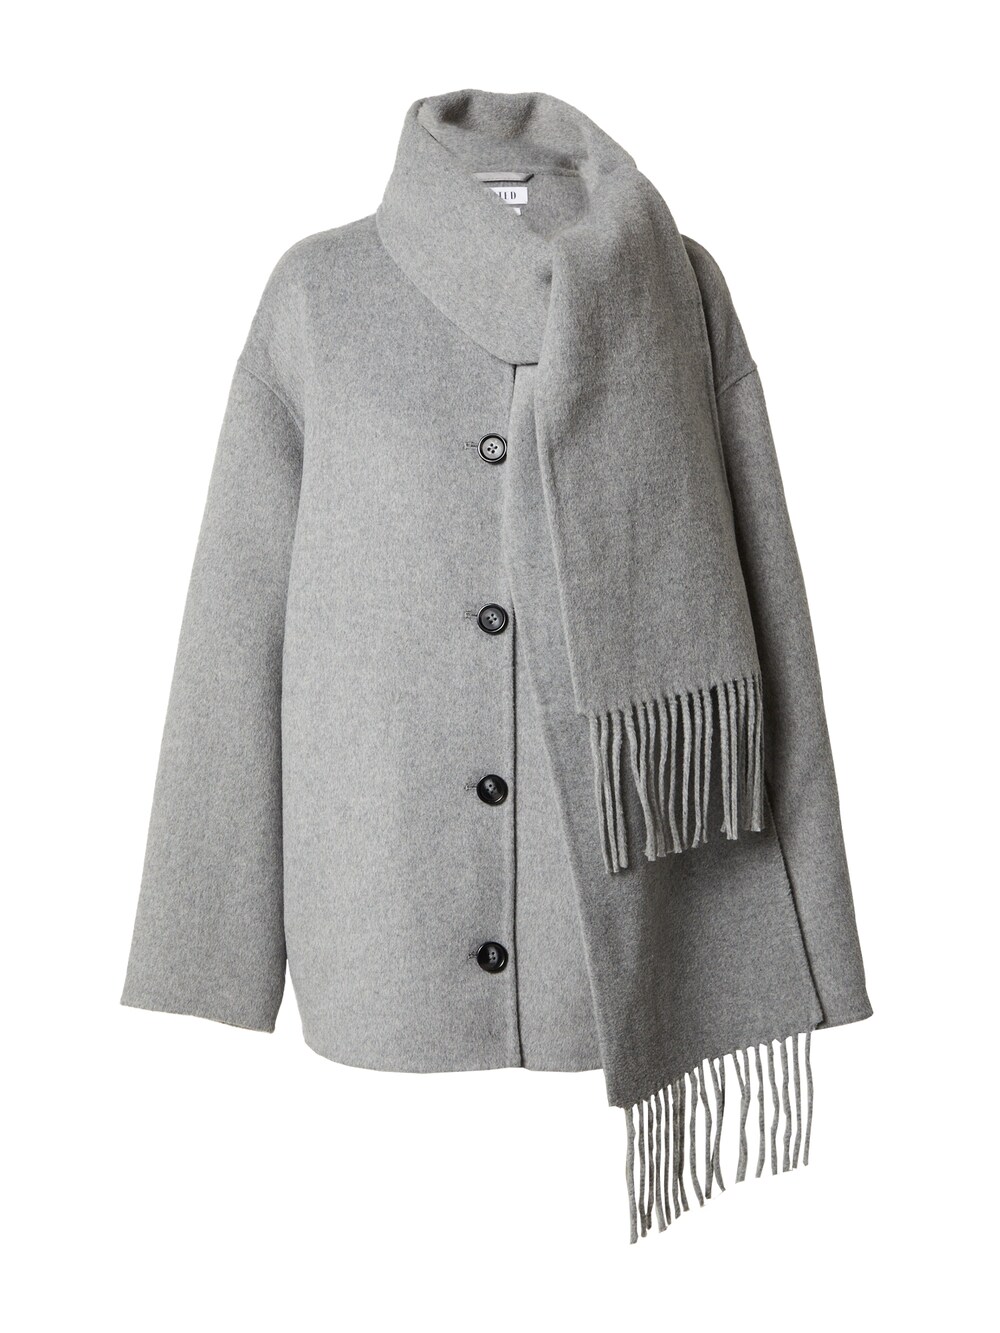 Межсезонное пальто EDITED Mayu, серый межсезонное пальто edited ekaterina пестрый серый